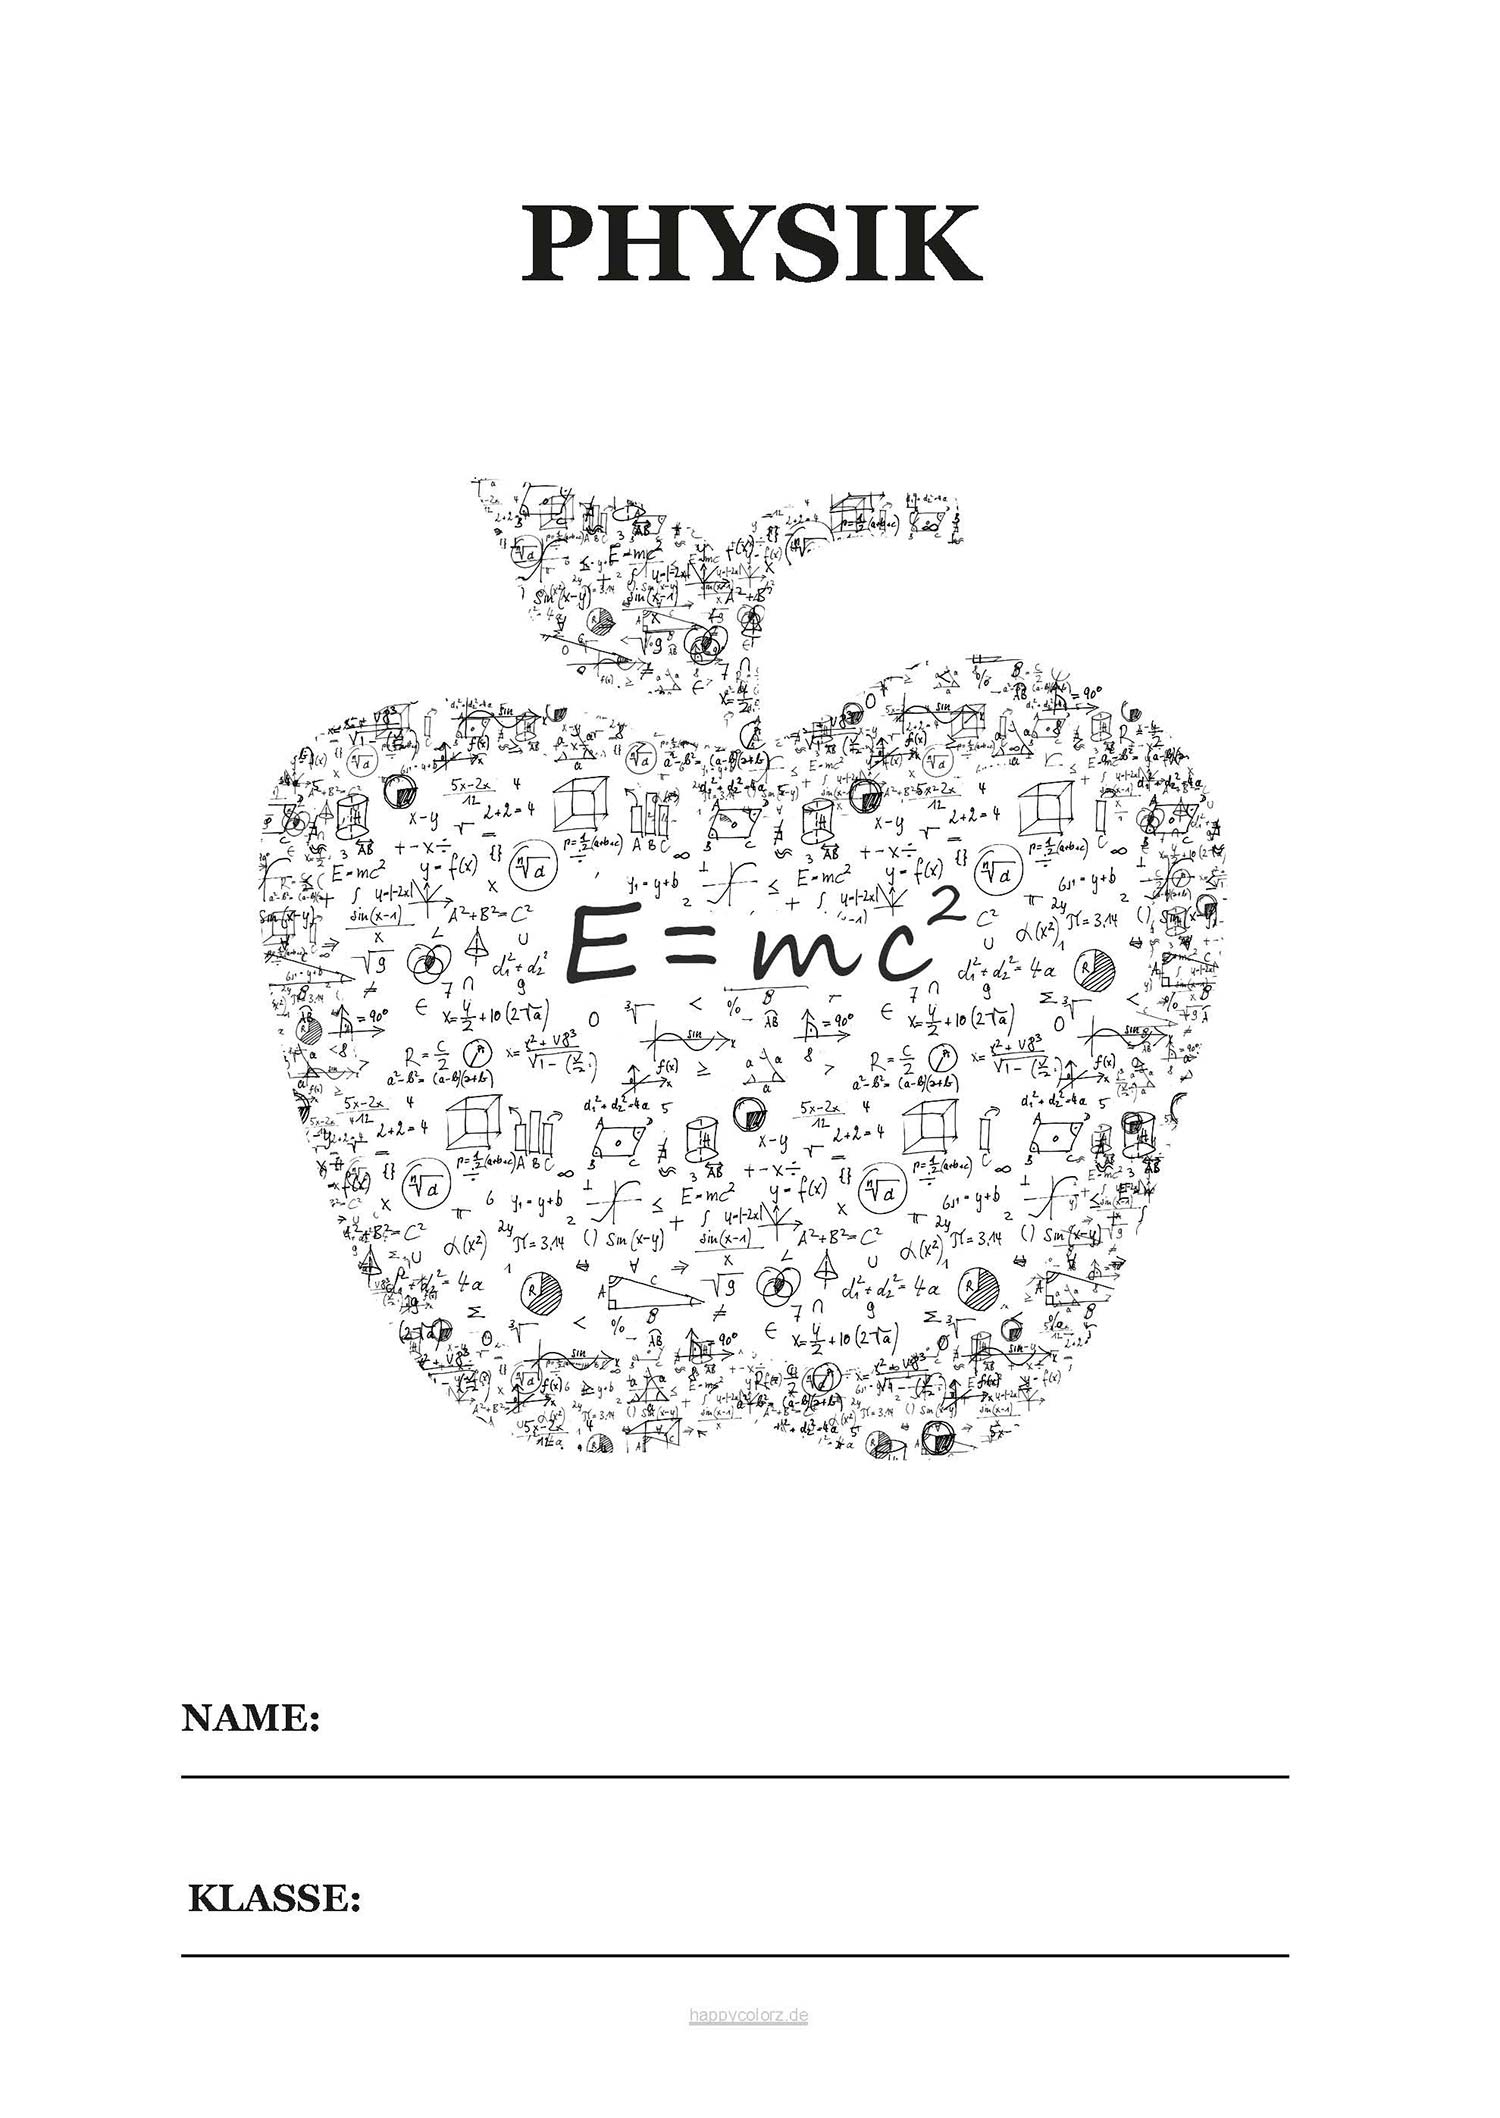 Physik Deckblatt mit Formeln in Apfelform zum kostenlosen ausdrucken (pdf)